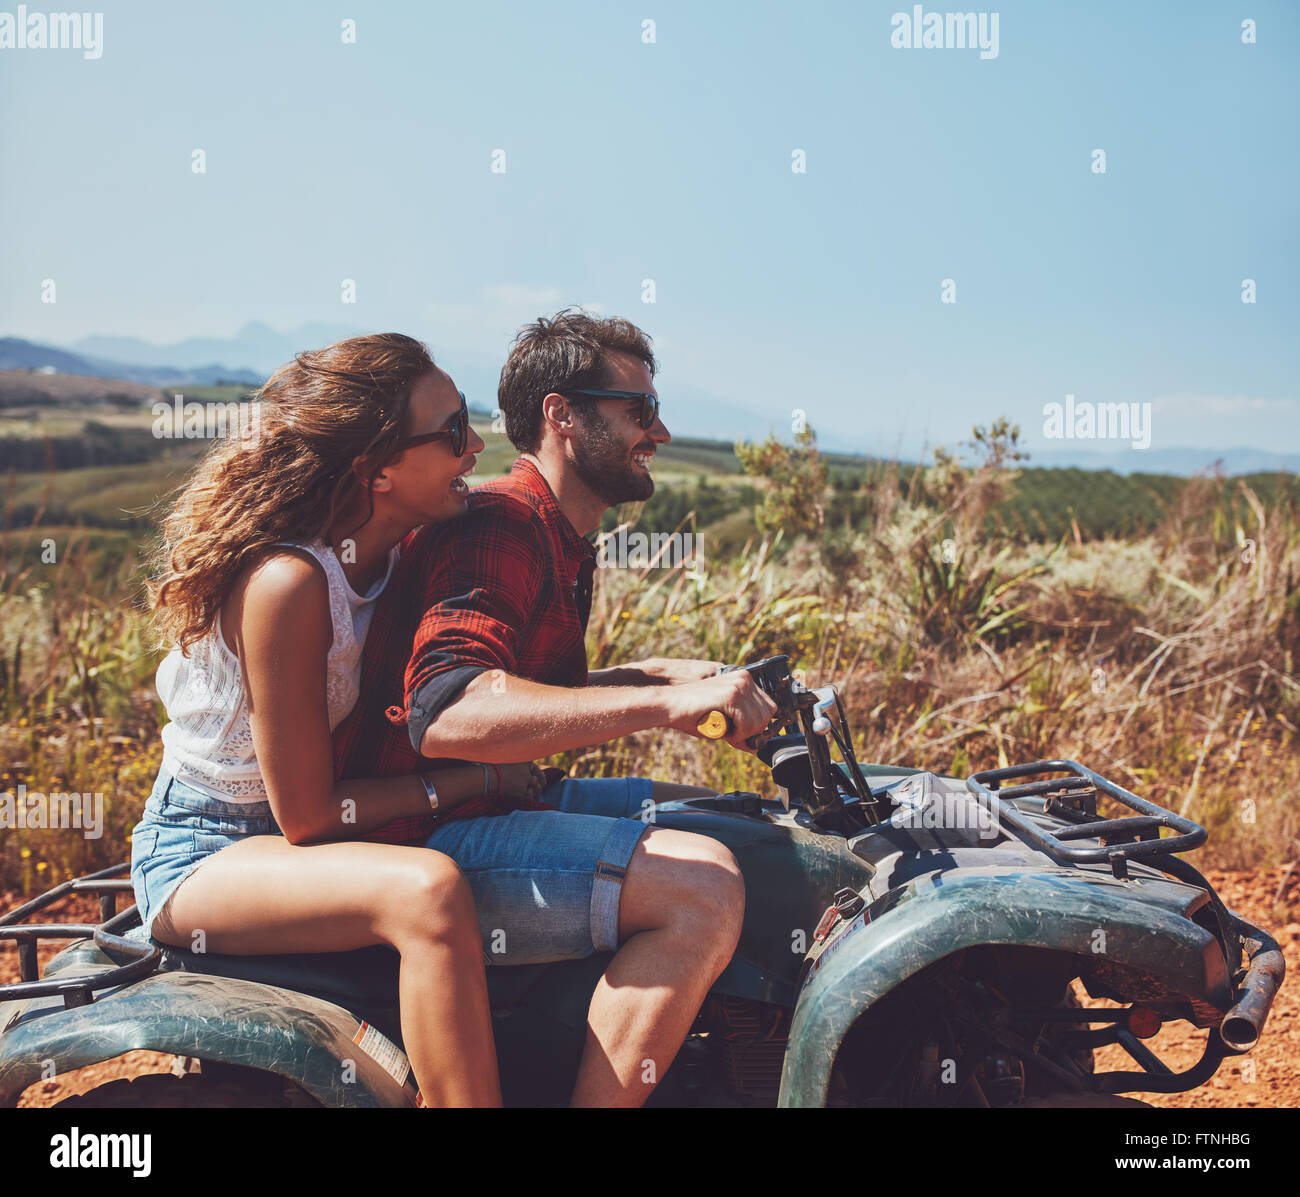 Seitenansicht der junge Mann und die Frau reitet auf einem Quad-Bike auf einen Sommerurlaub. Paar genießt Ferien auf einem Quad-Bike in countrysi Stockfoto